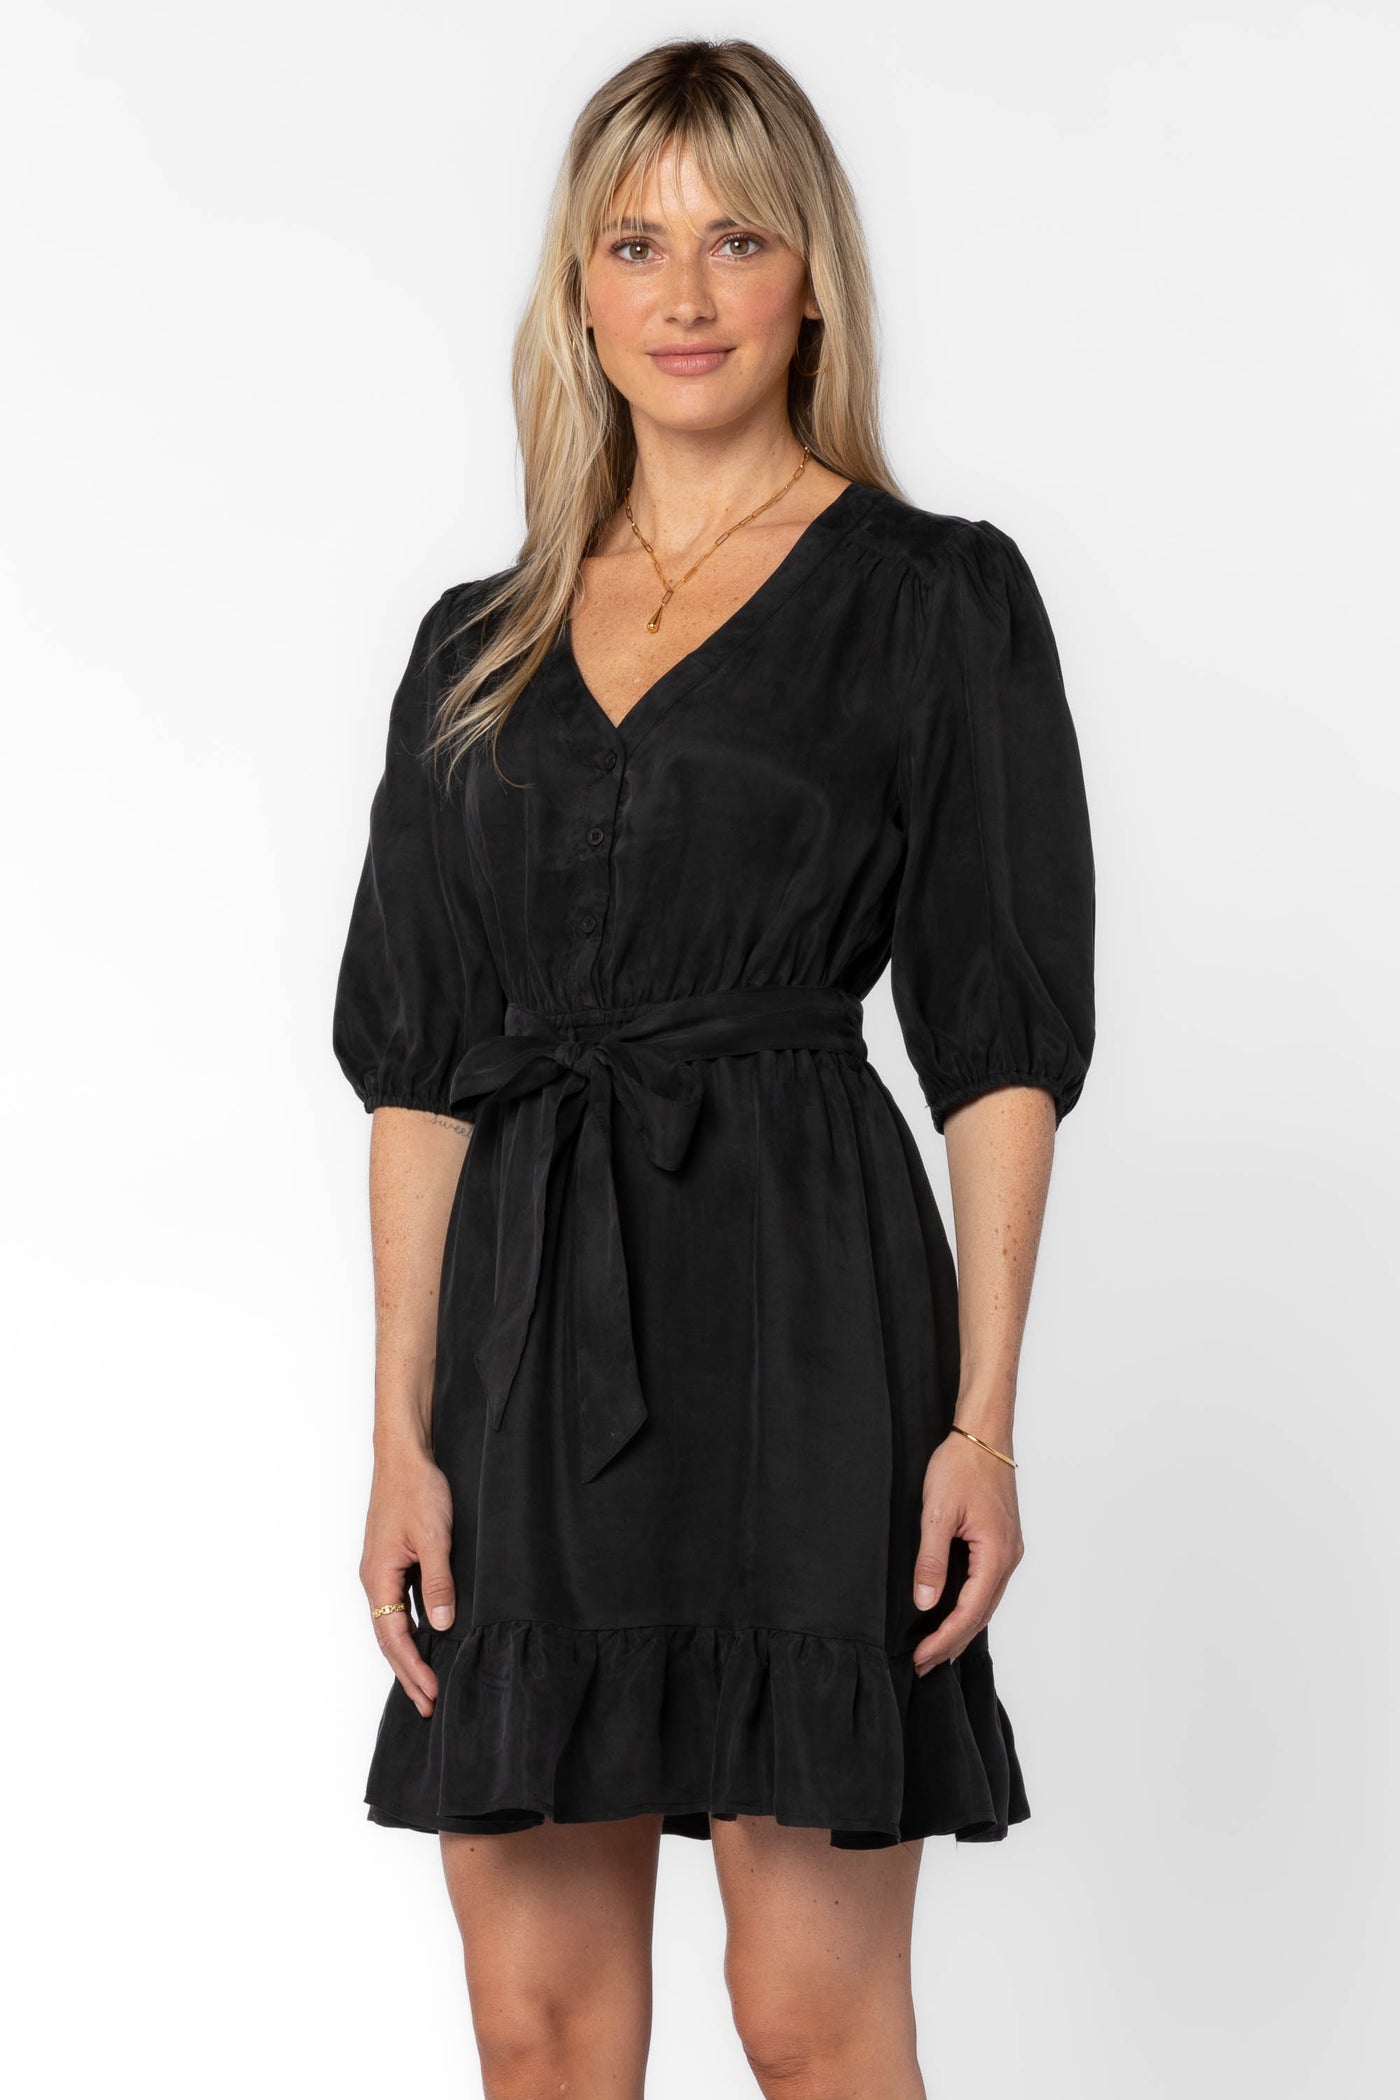 Darcie Black Dress - Dresses - Velvet Heart Clothing